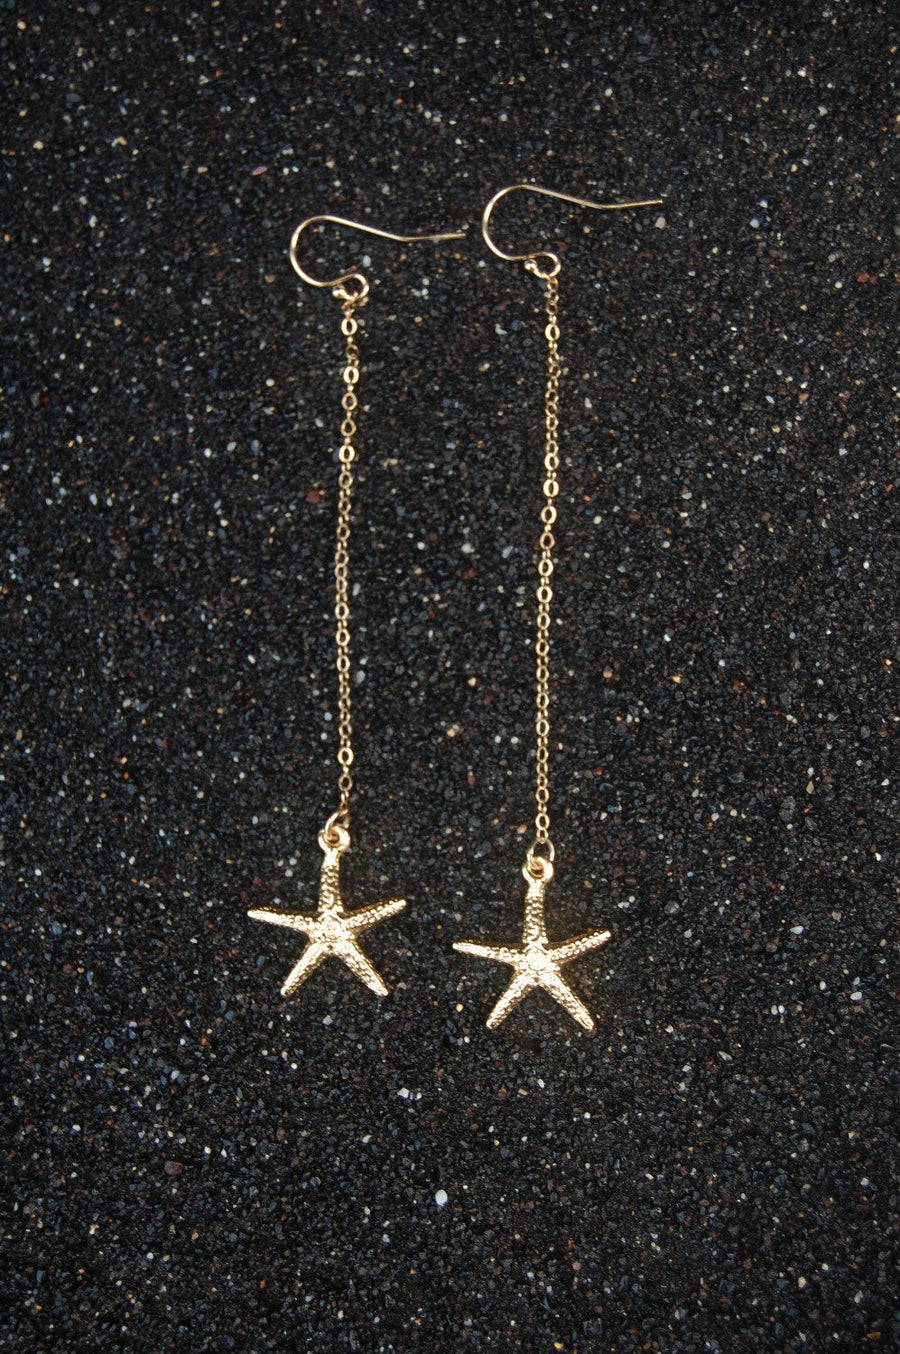 Sea Star Earrings - L A G O O N DESIGNS